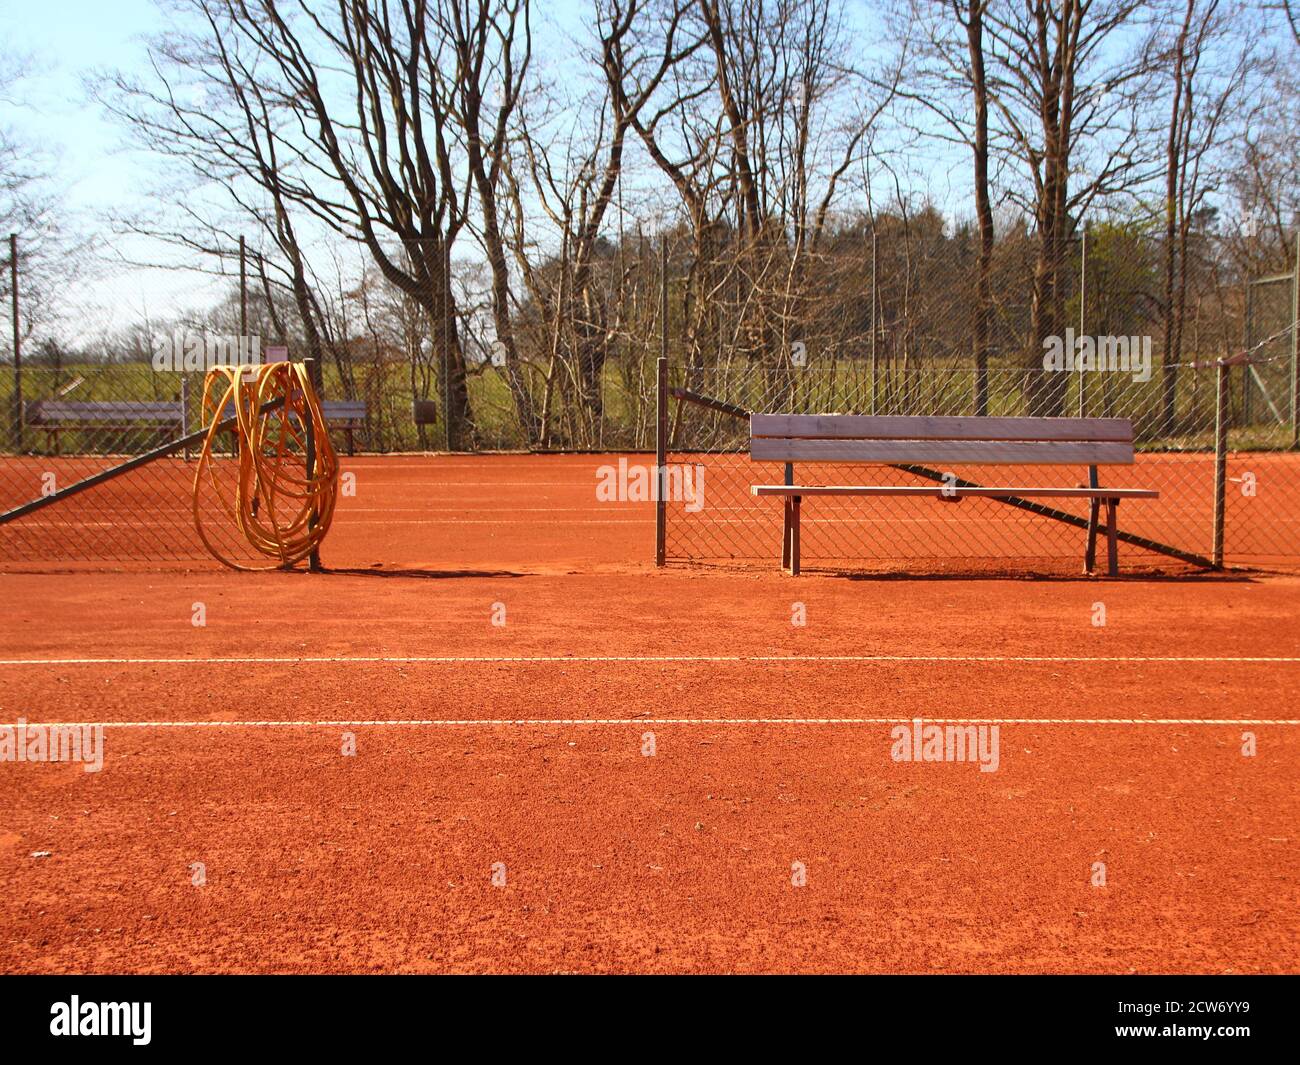 Dettaglio di un campo da tennis in argilla rossa vuoto in estate. Al centro c'è un banco di legno e un tubo giallo. Foto Stock